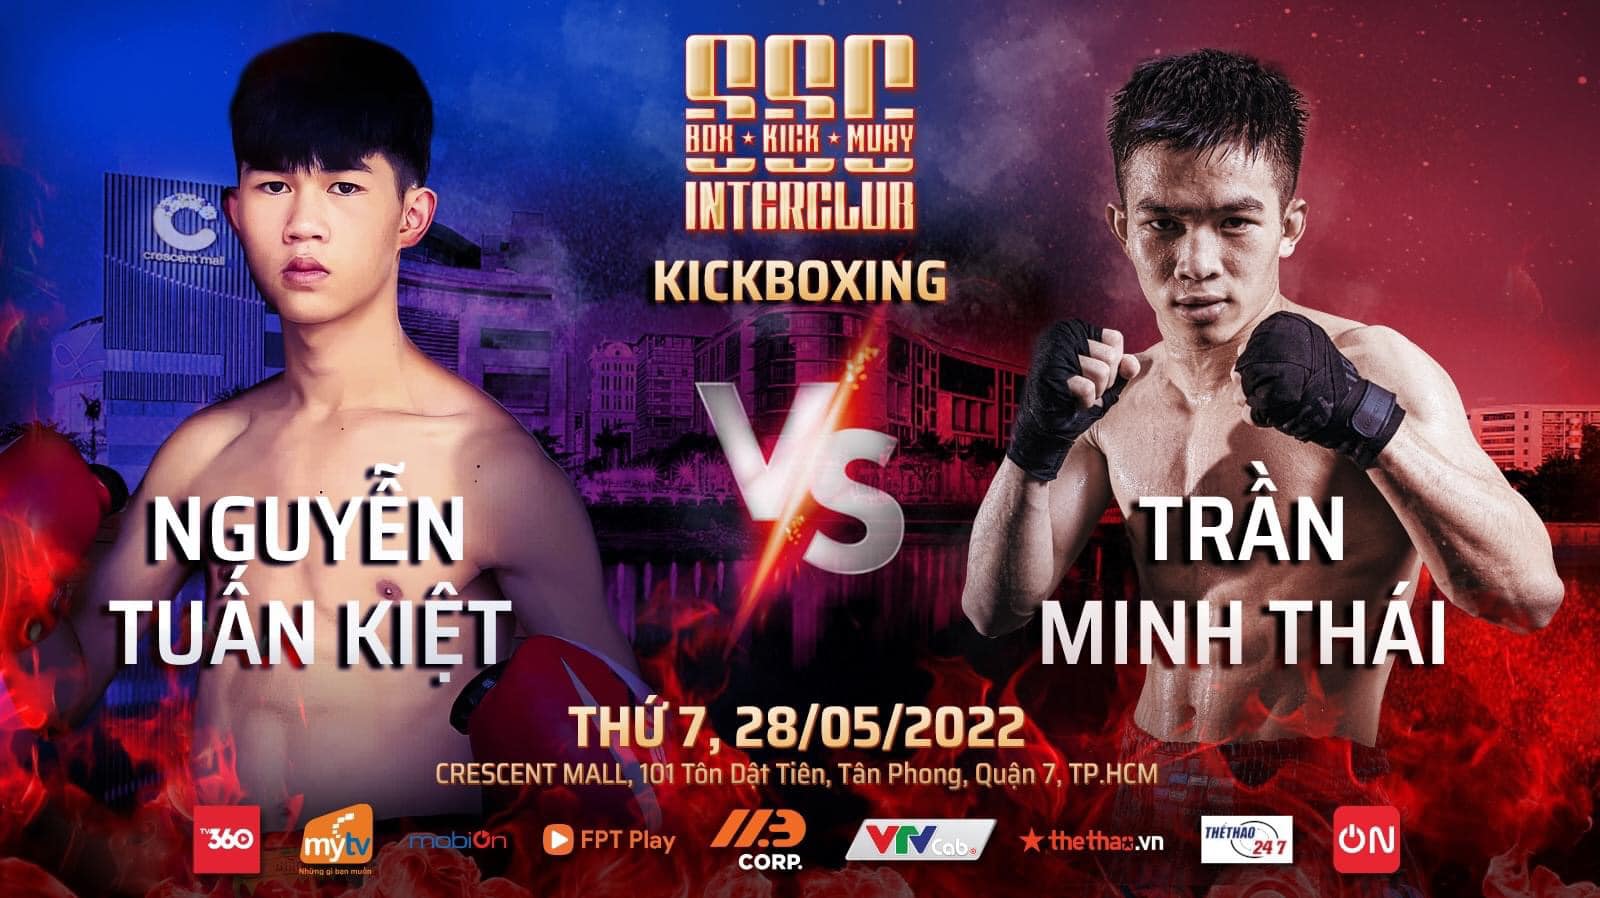 Sự kiện 3 môn võ Boxing, Kickboxing, Muay Thái tổ chức ở TPHCM ngày 28/5 - Ảnh 13